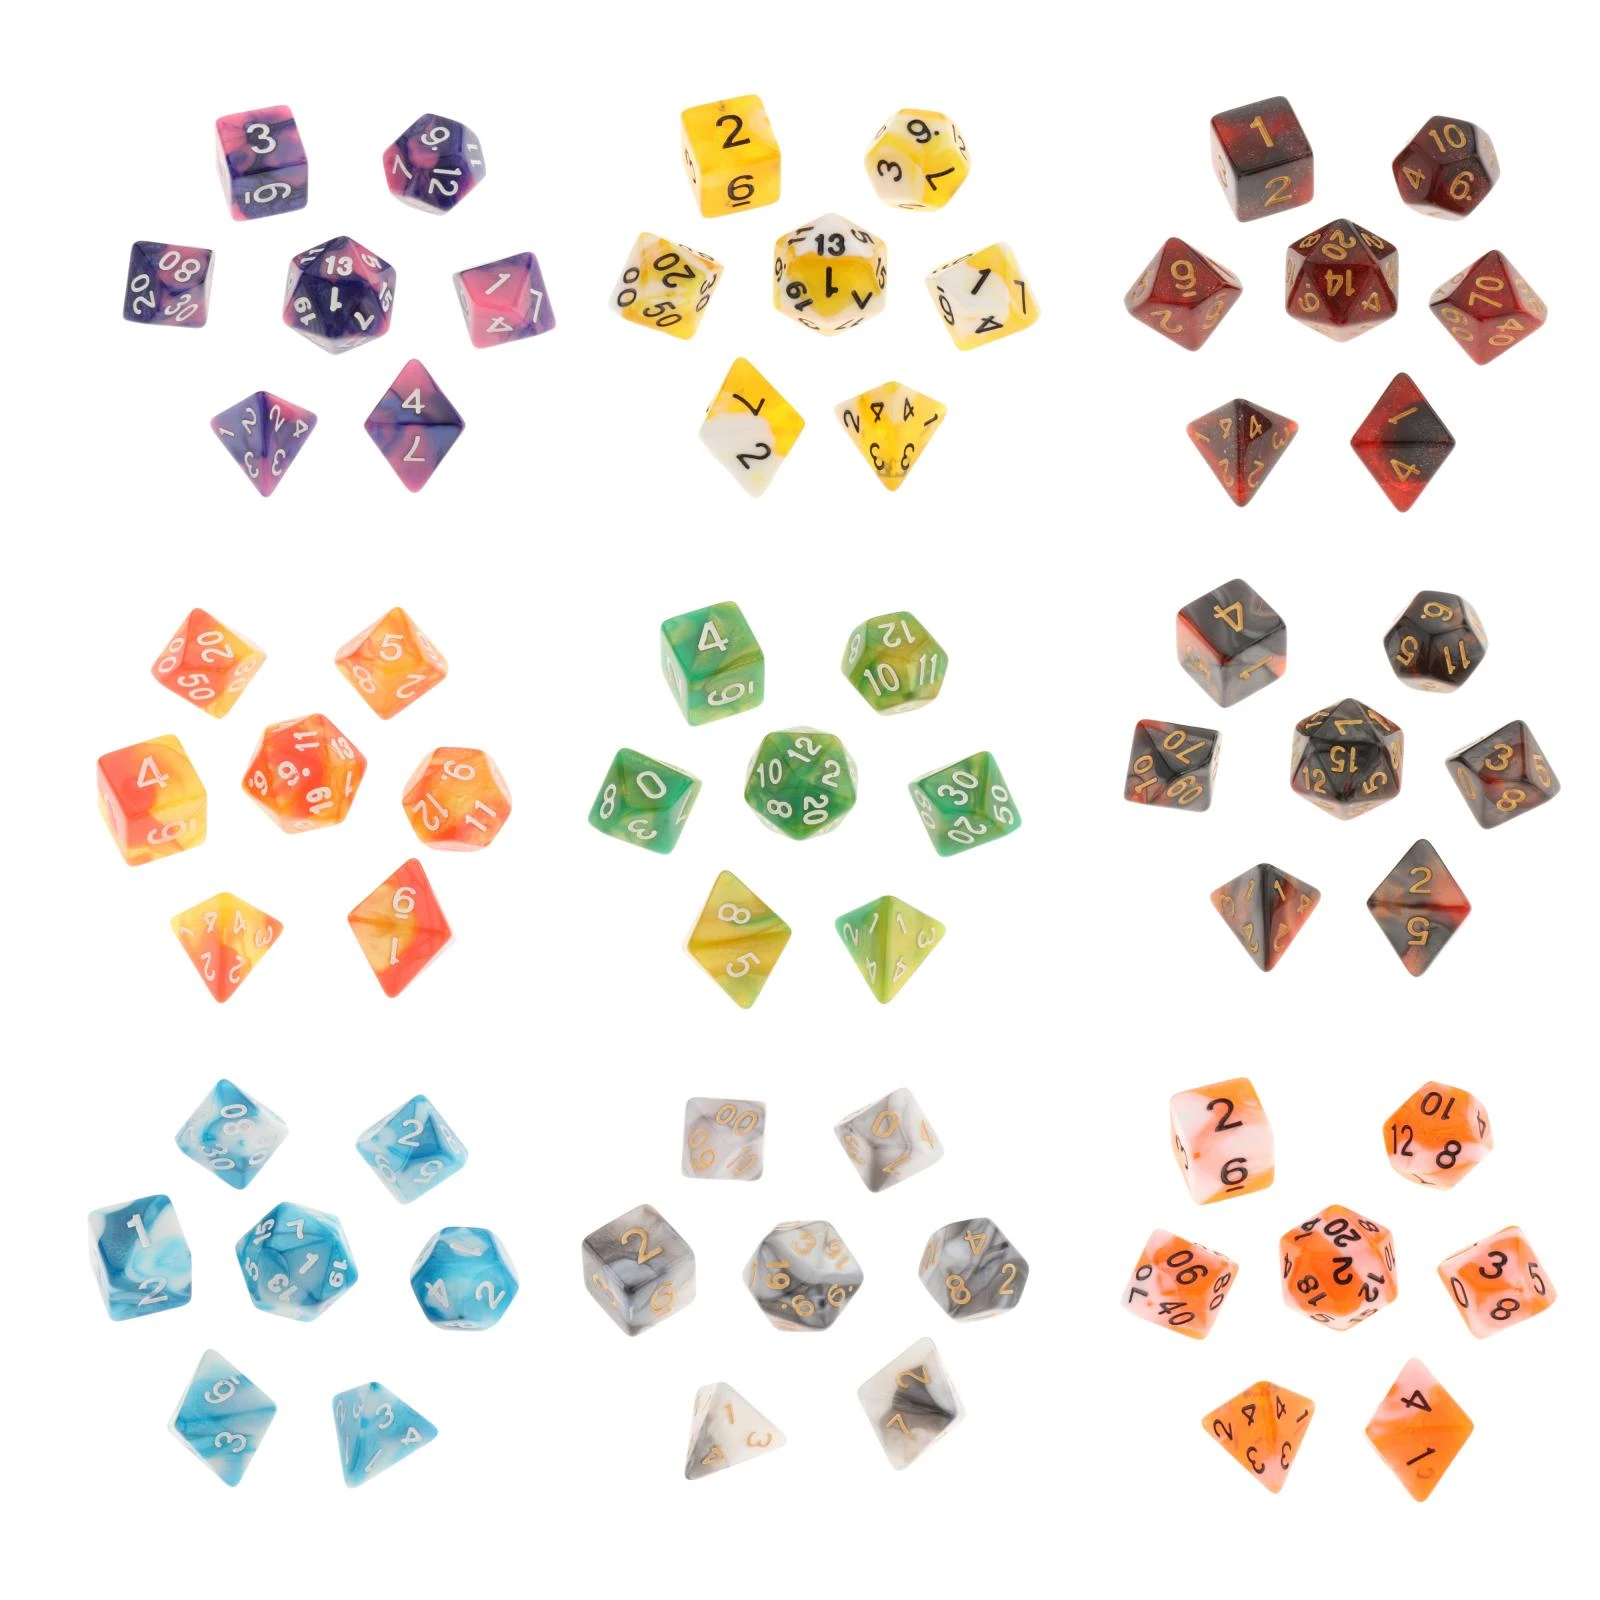 Multi sided dice set of 7x D4 D6 D8 D10 D12 D20 Dungeons D&D RPG MTG Games C